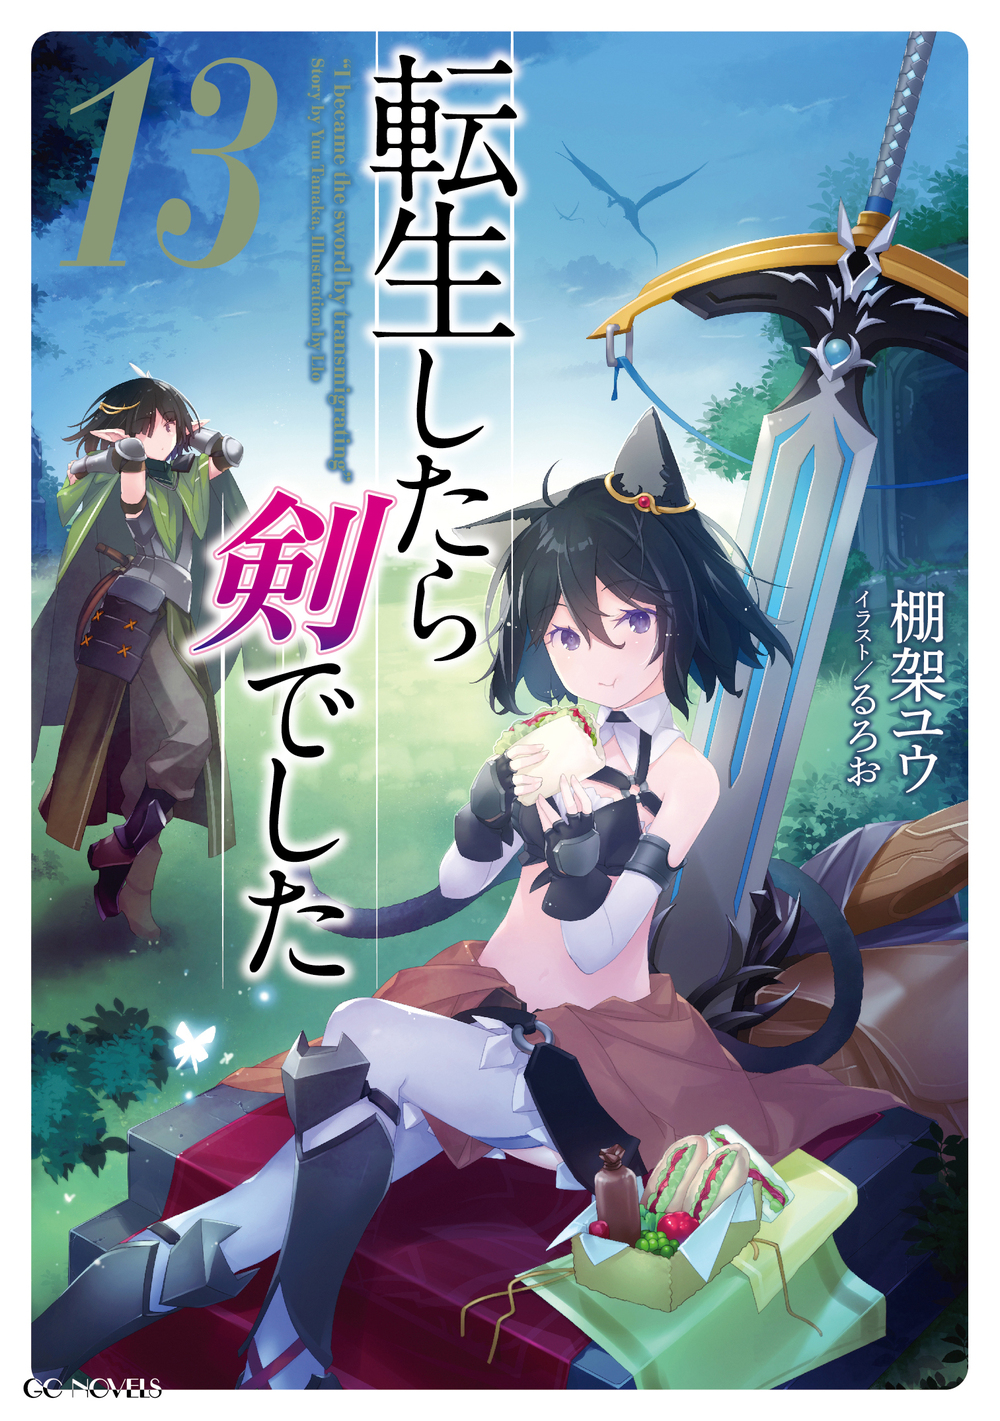 Light Novel 'Tensei shitara Ken deshita' Gets TV Anime